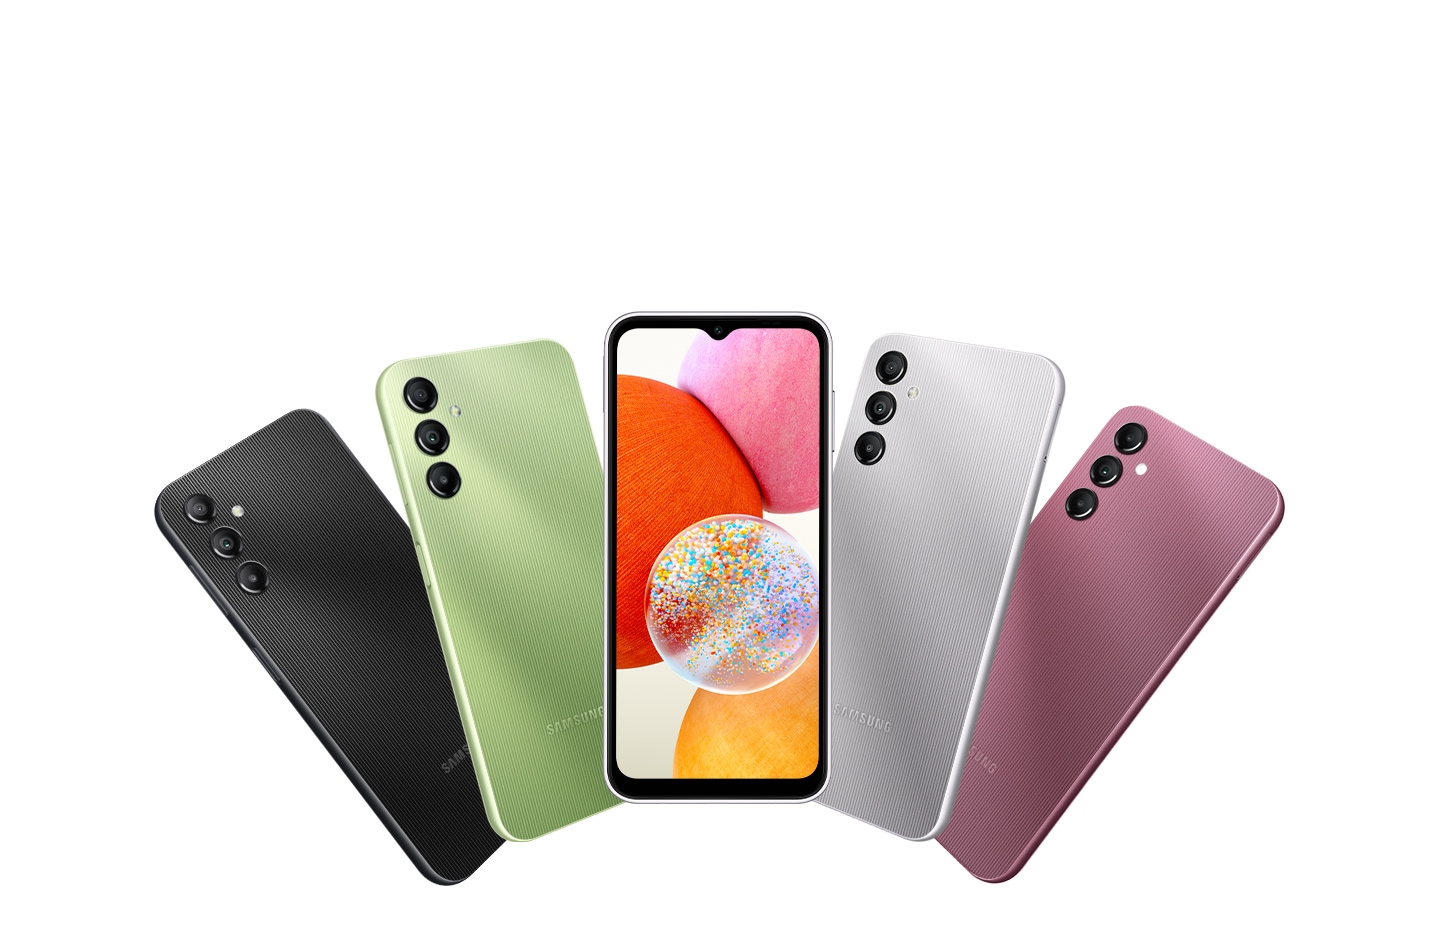 L'immagine mostra cinque dispositivi Galaxy A14 nelle varie colorazioni disponibili. Quattro di questi sono visti dal retro, mettendo in mostra i colori Black, Light Green, Silver e Dark Red. Il quinto dispositivo, visto dal davanti, è posizionato in mezzo agli altri, con palline colorate sullo schermo.